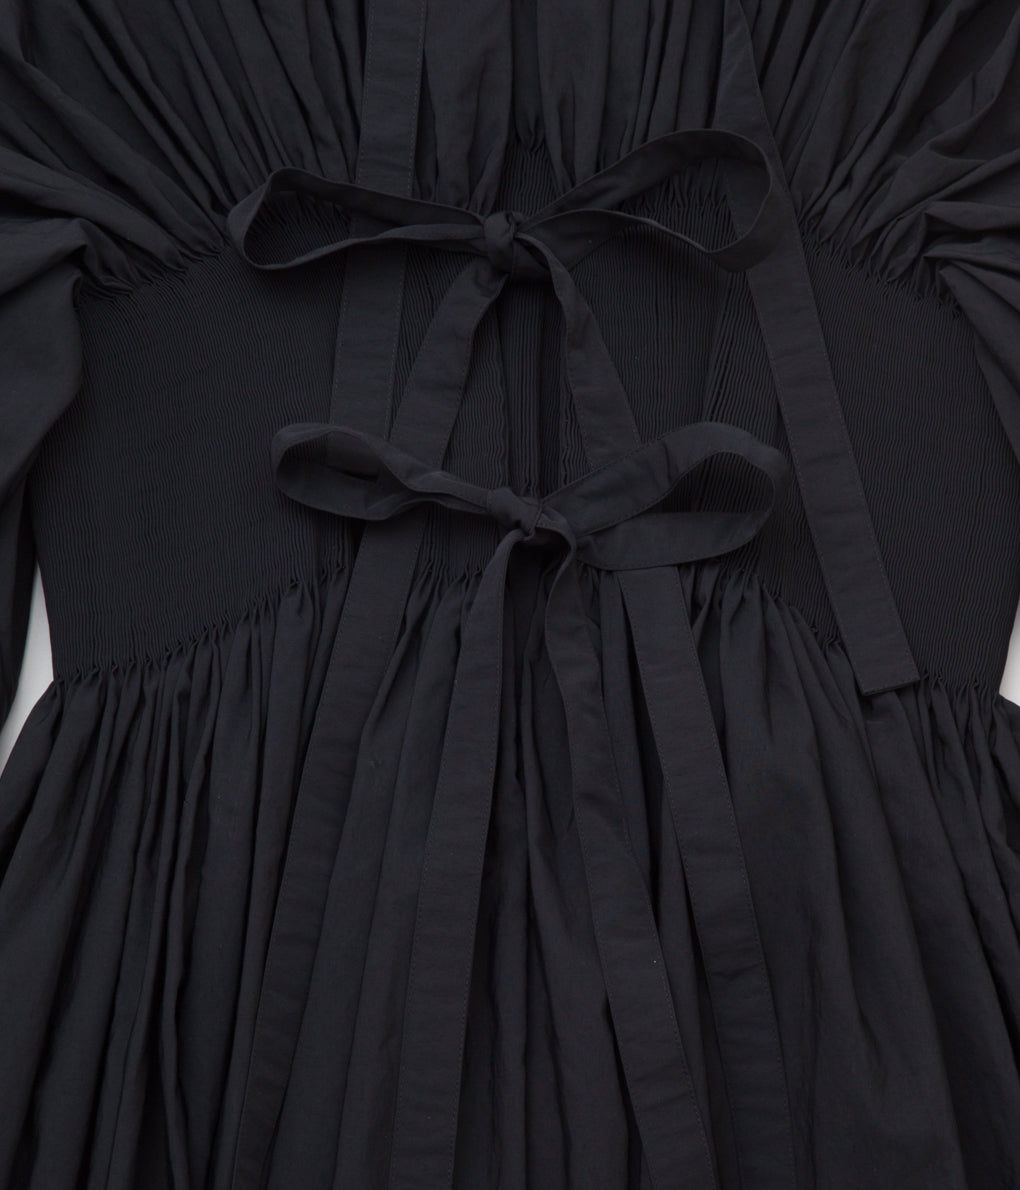 RENATA BRENHA "BANDONE NON DRESS" (BLACK)